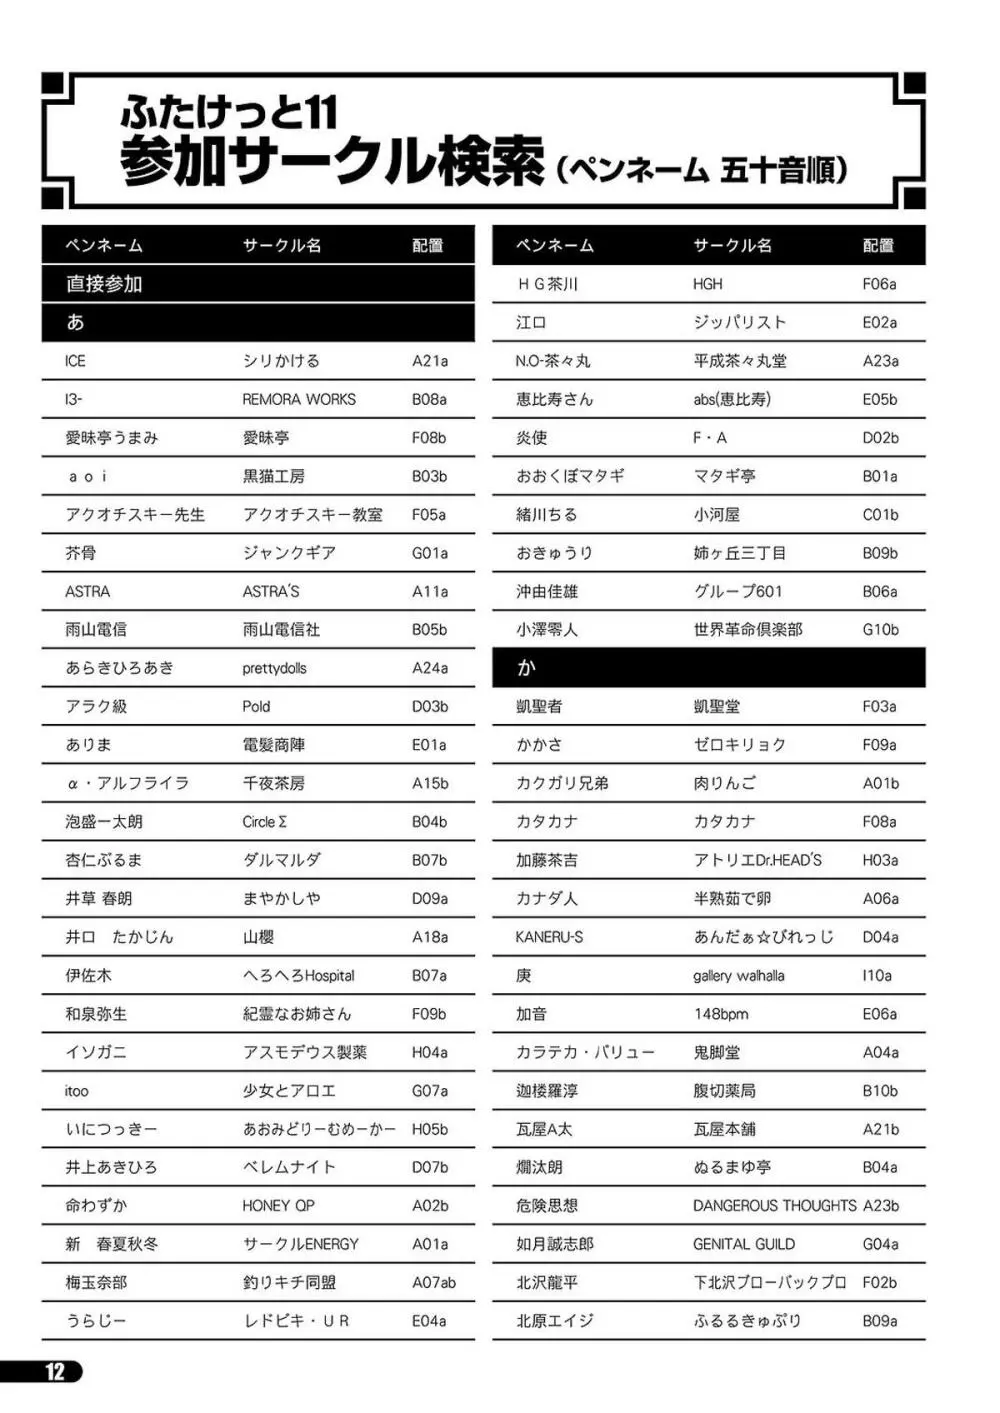 「ふたけっと11」PDF版カタログ 12ページ